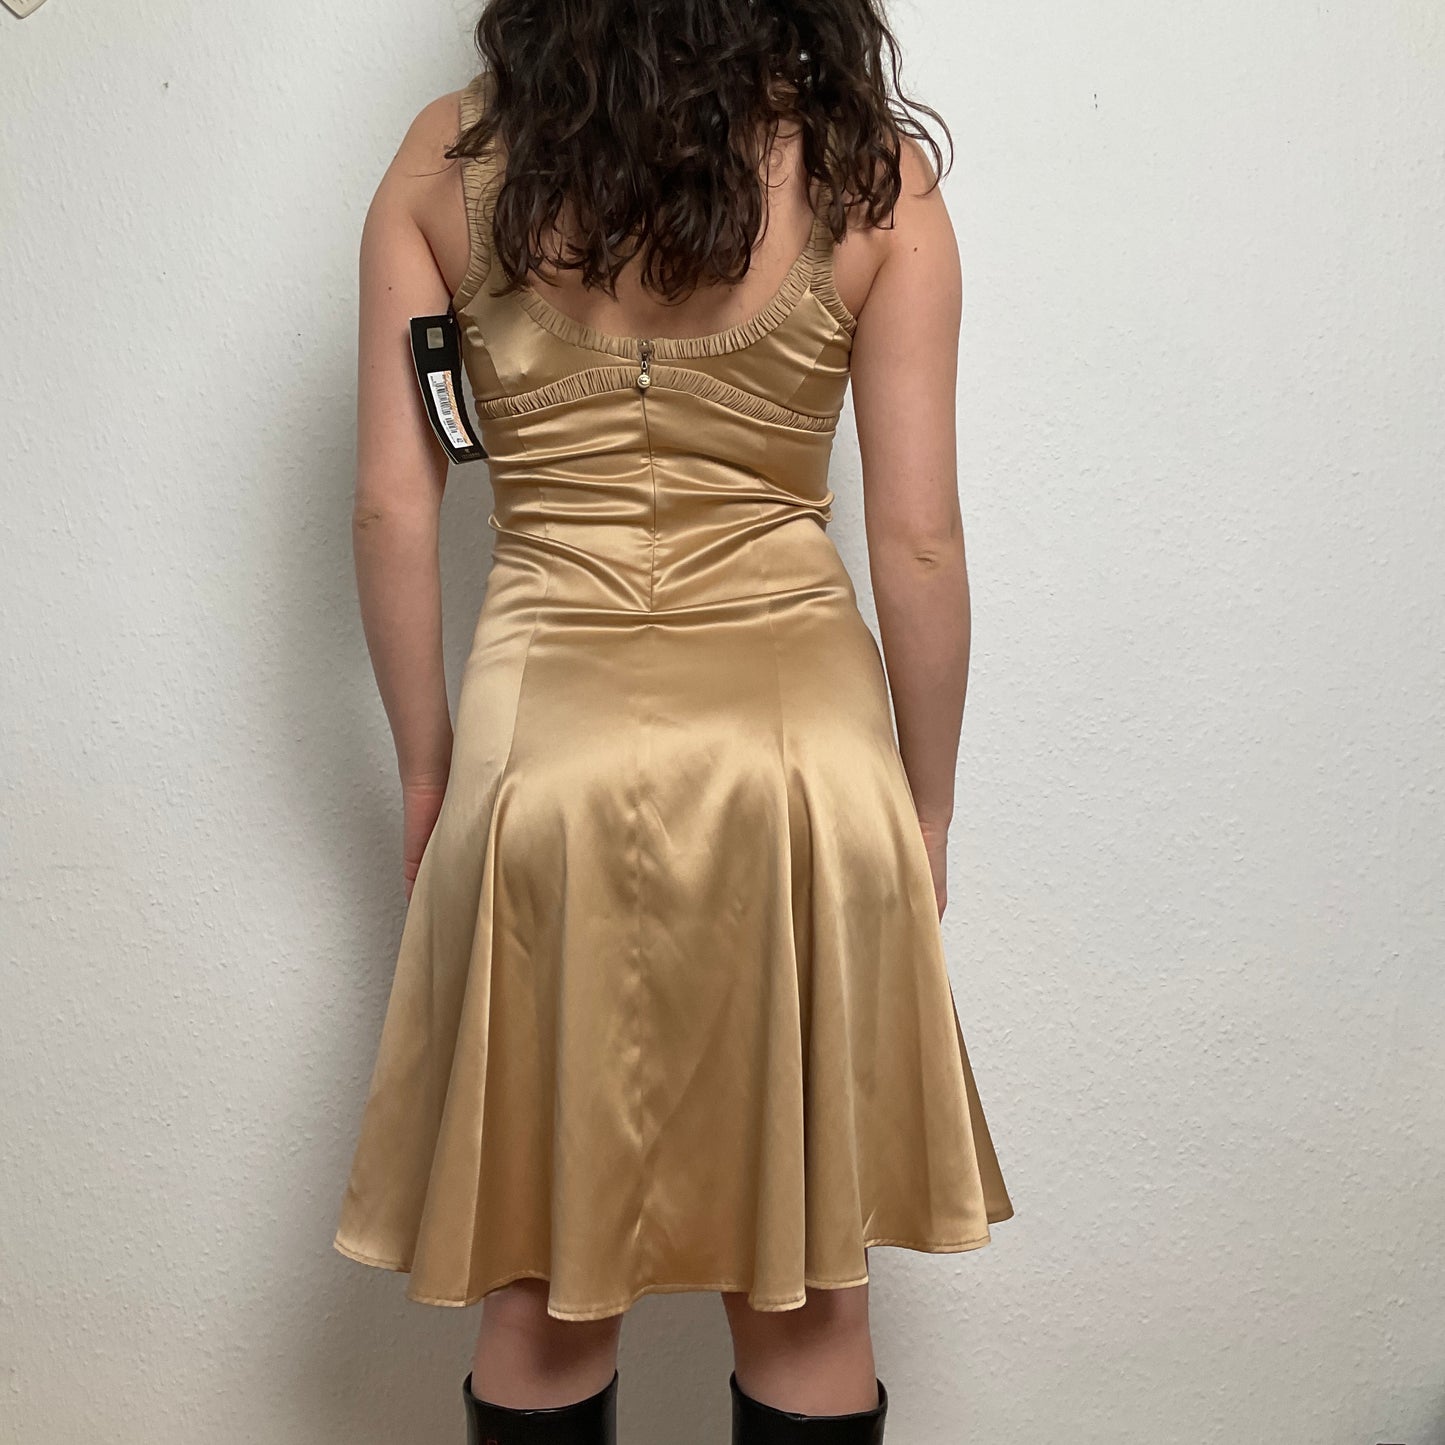 Just Cavalli liquid gold dress